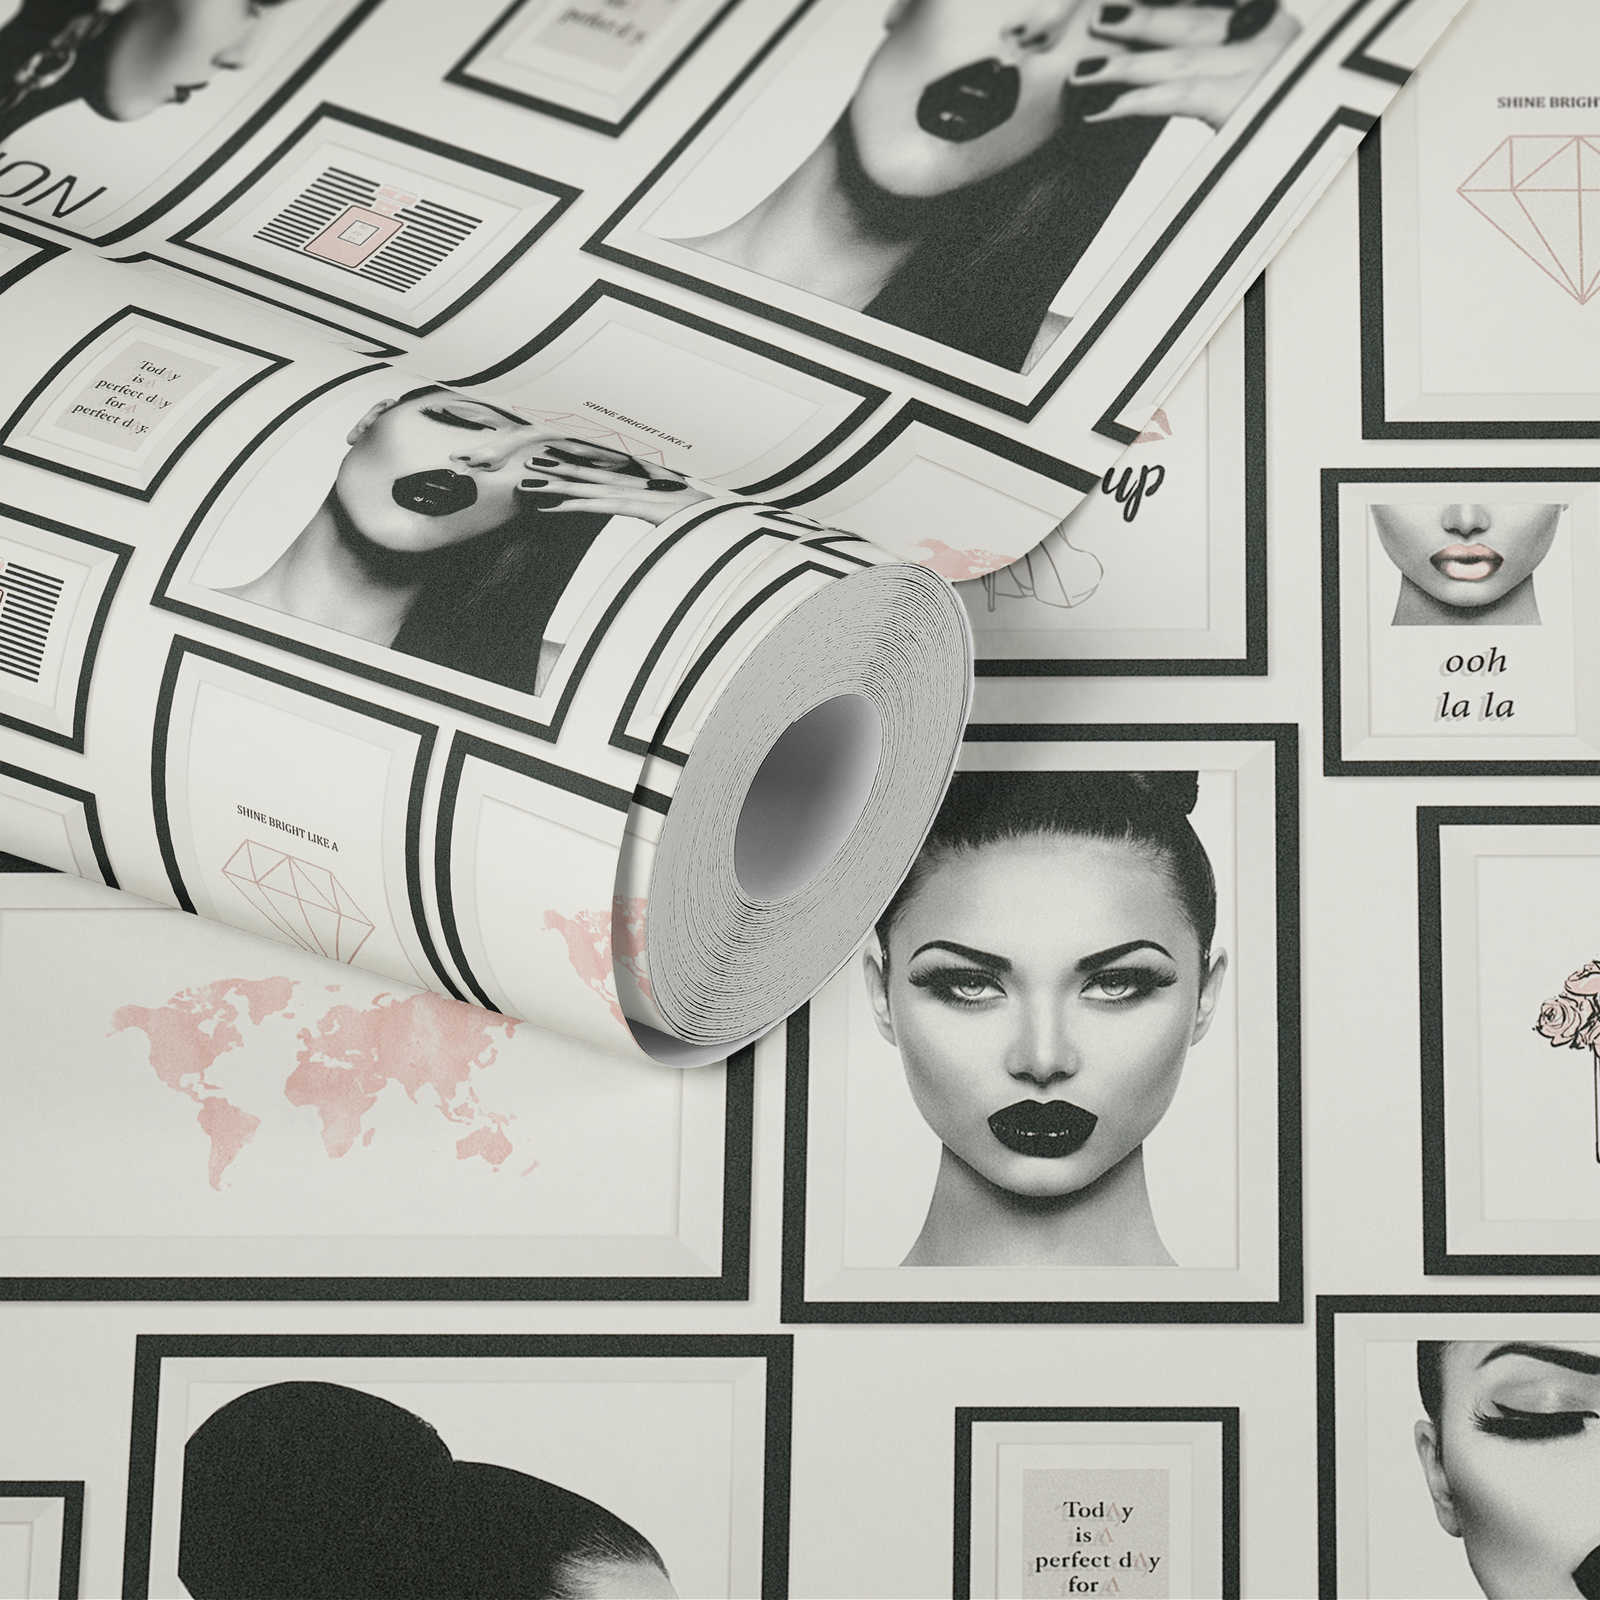             Papier peint Fashion Design avec décorations murales - noir, blanc, gris, rose
        